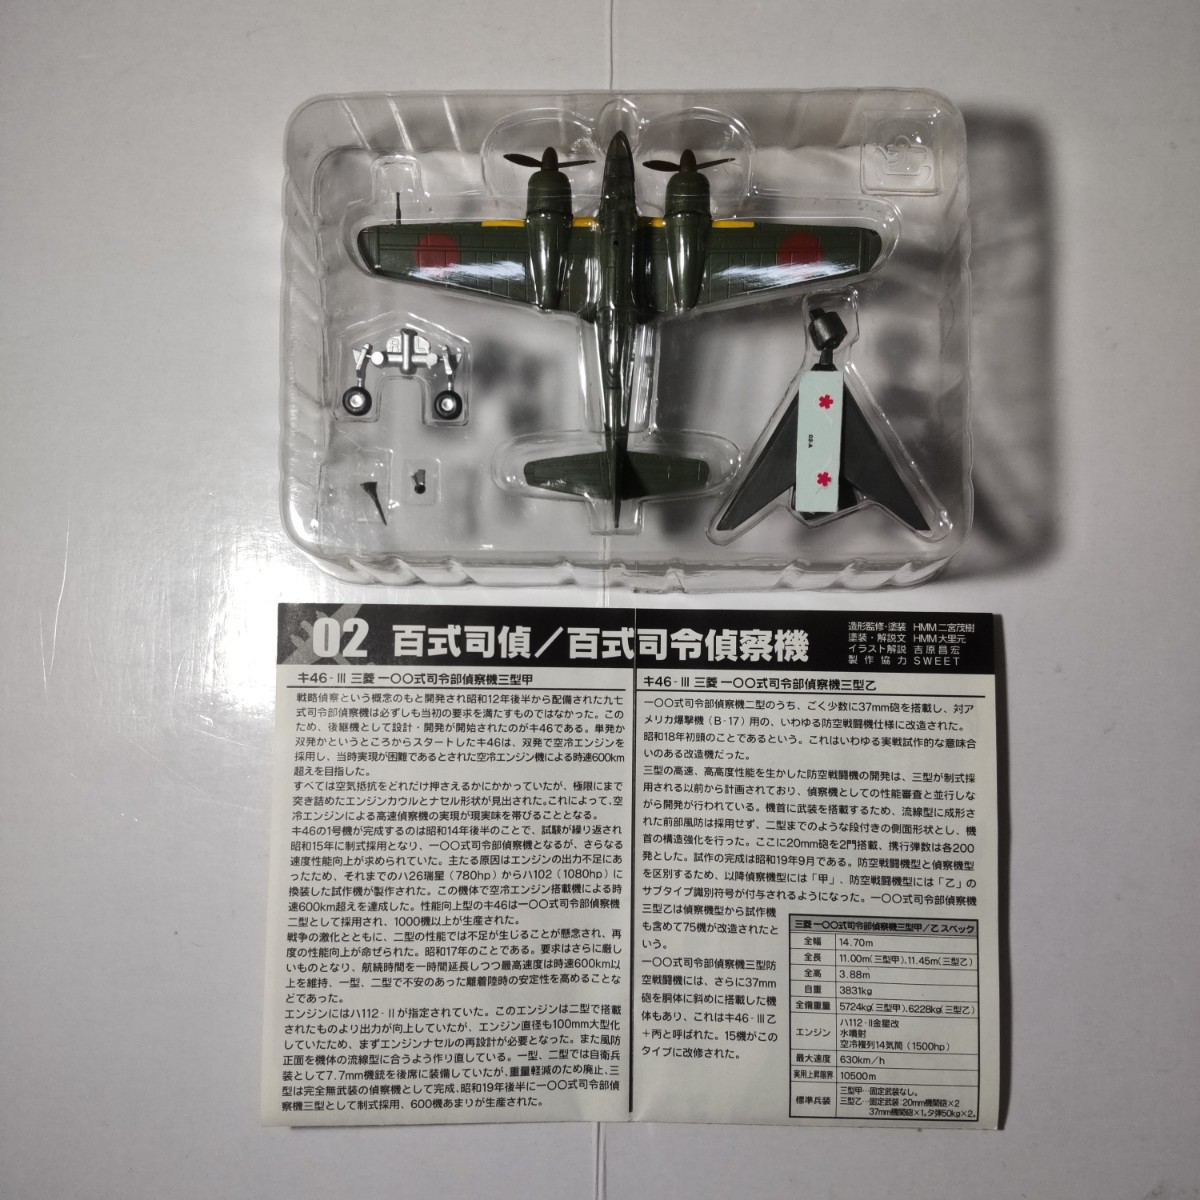 三菱 百式司令部偵察機 Ⅲ型甲 日本陸軍 飛行第15戦隊 エフトイズ 1/144